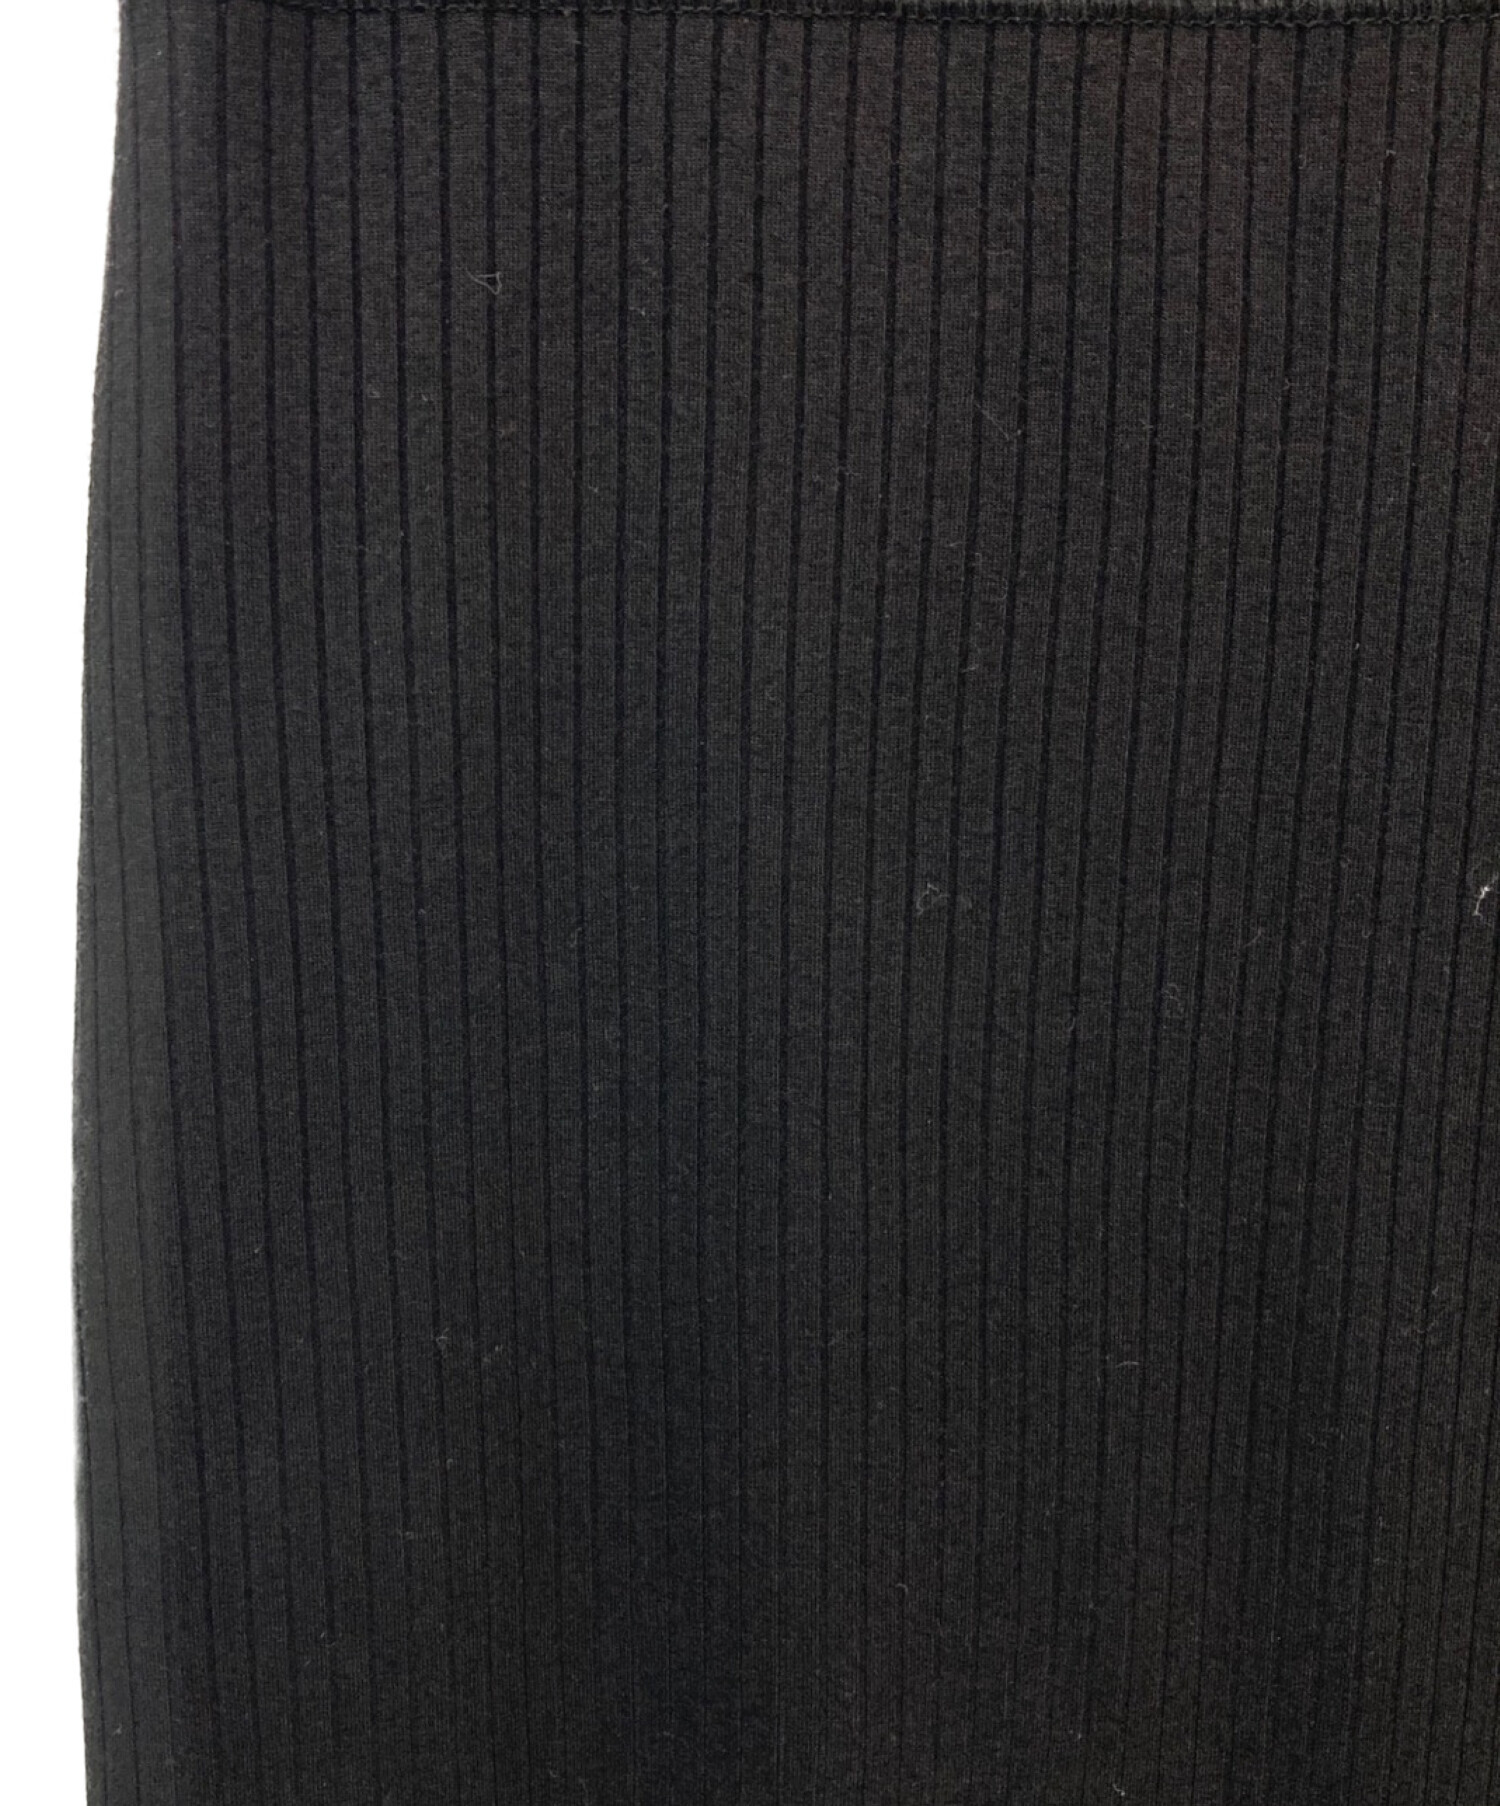 DEUXIEME CLASSE (ドゥーズィエム クラス) Jersey rib スカート ブラック サイズ:F